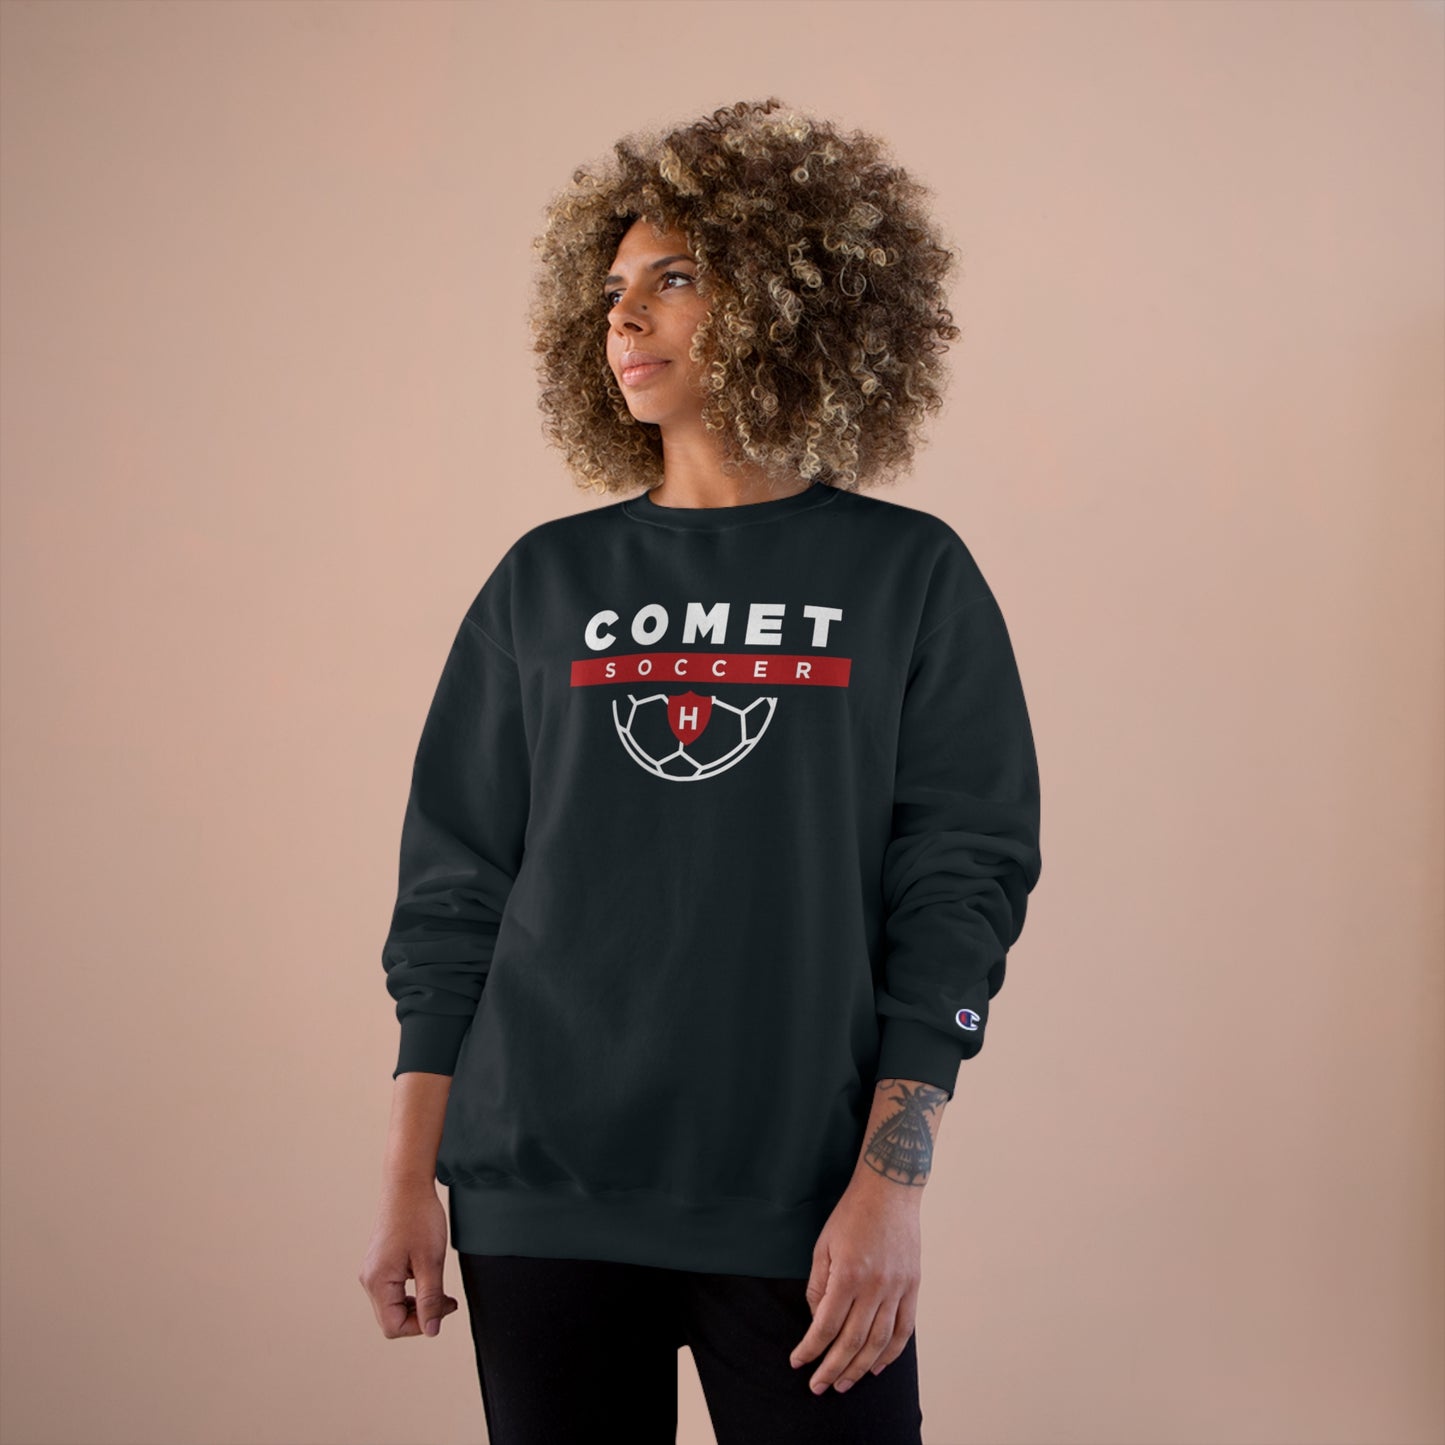 Comet Soccer - Champion Sweatshirt